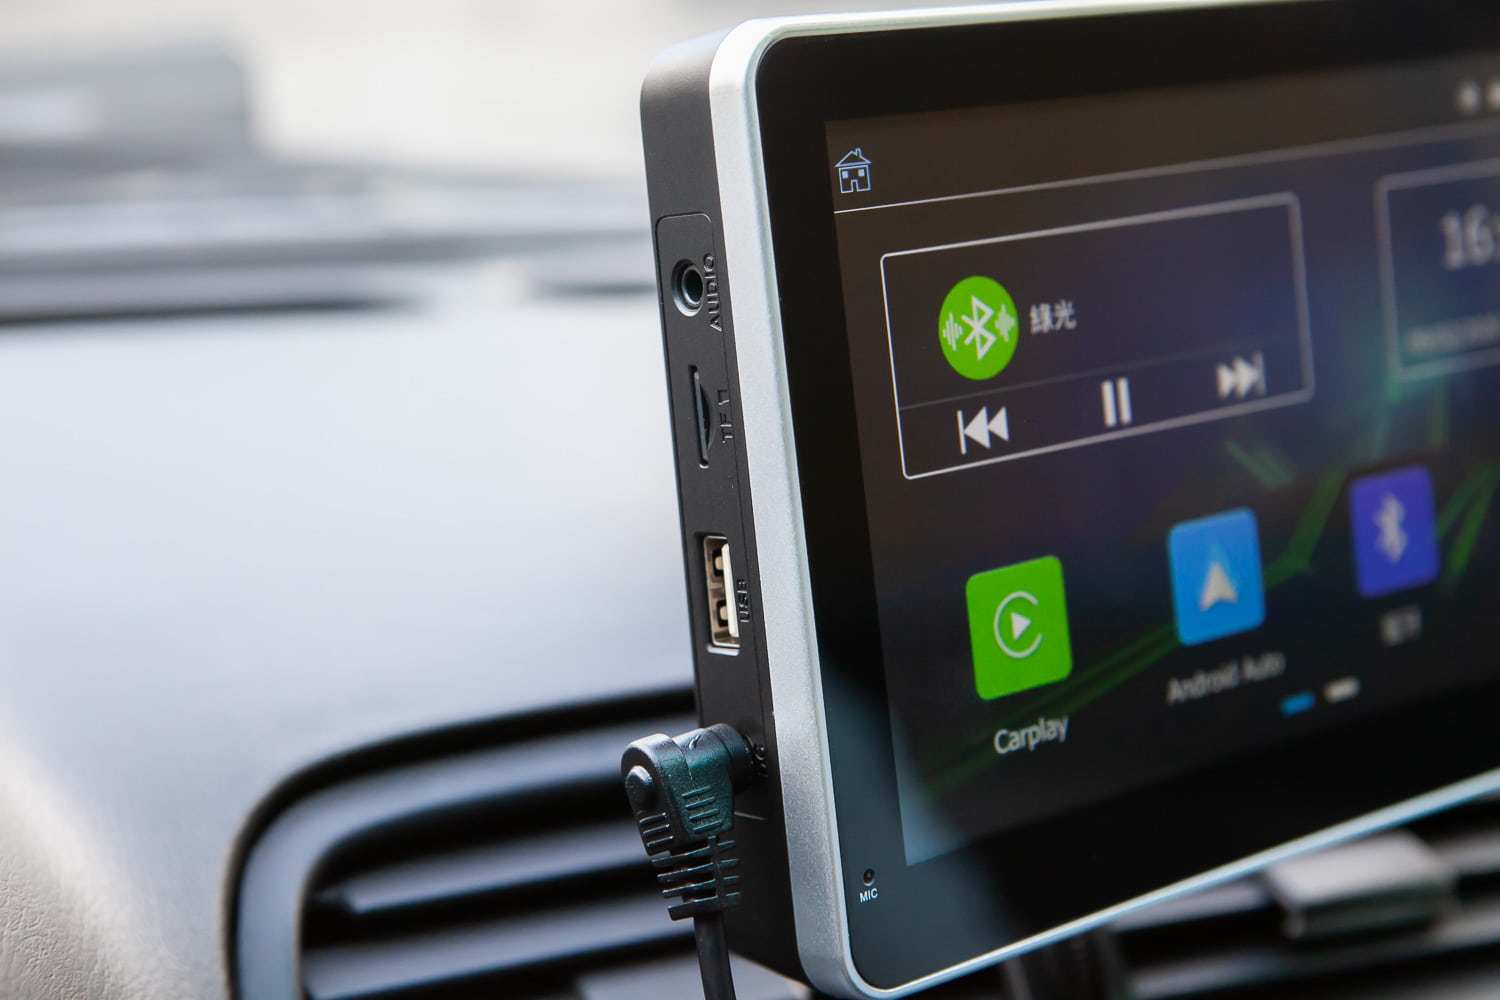 Apple CarPlay 免換車、免改裝，接上這台主機就能享有